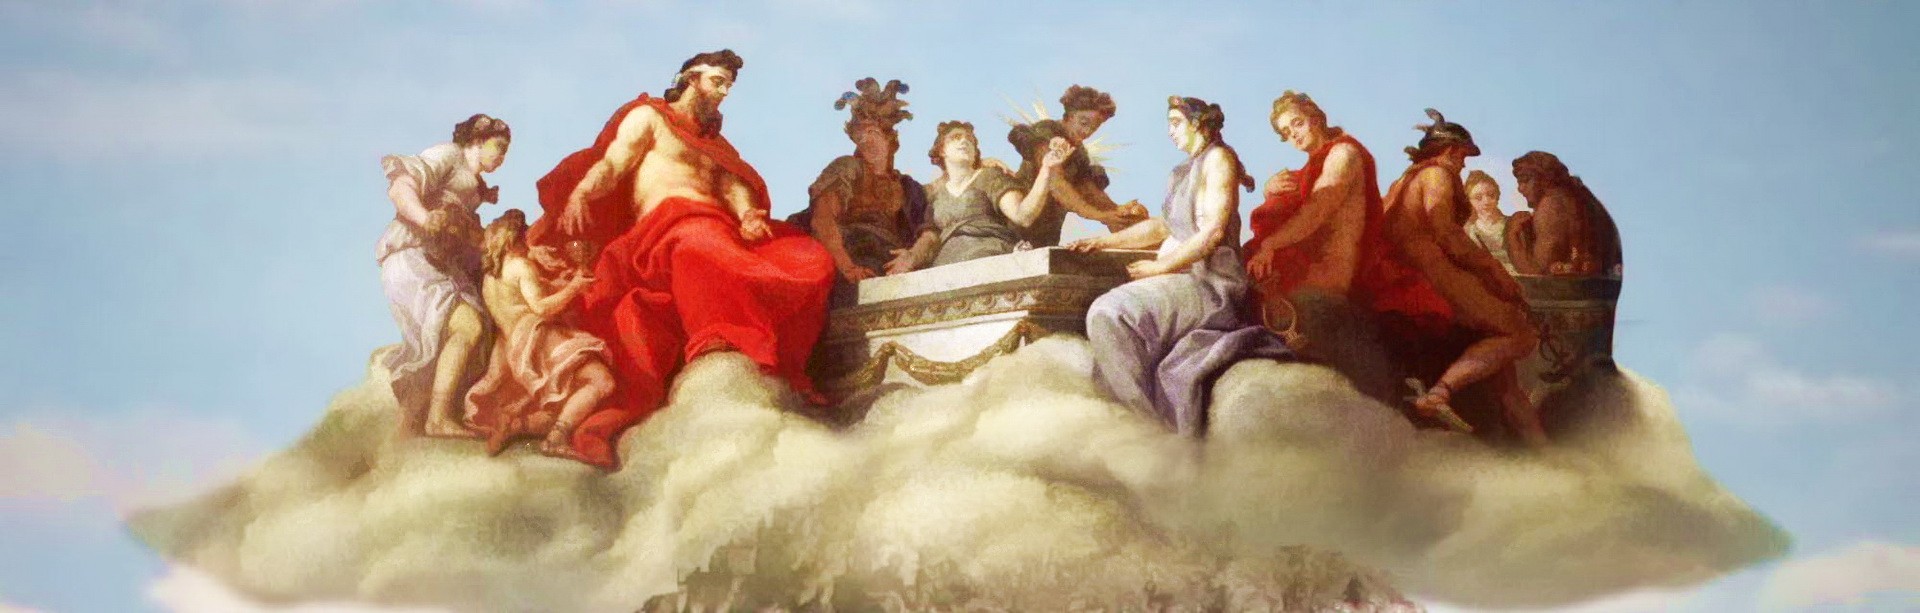 Мифы Древней Греции... Небесные боги над горой Олимпия решают судьбы